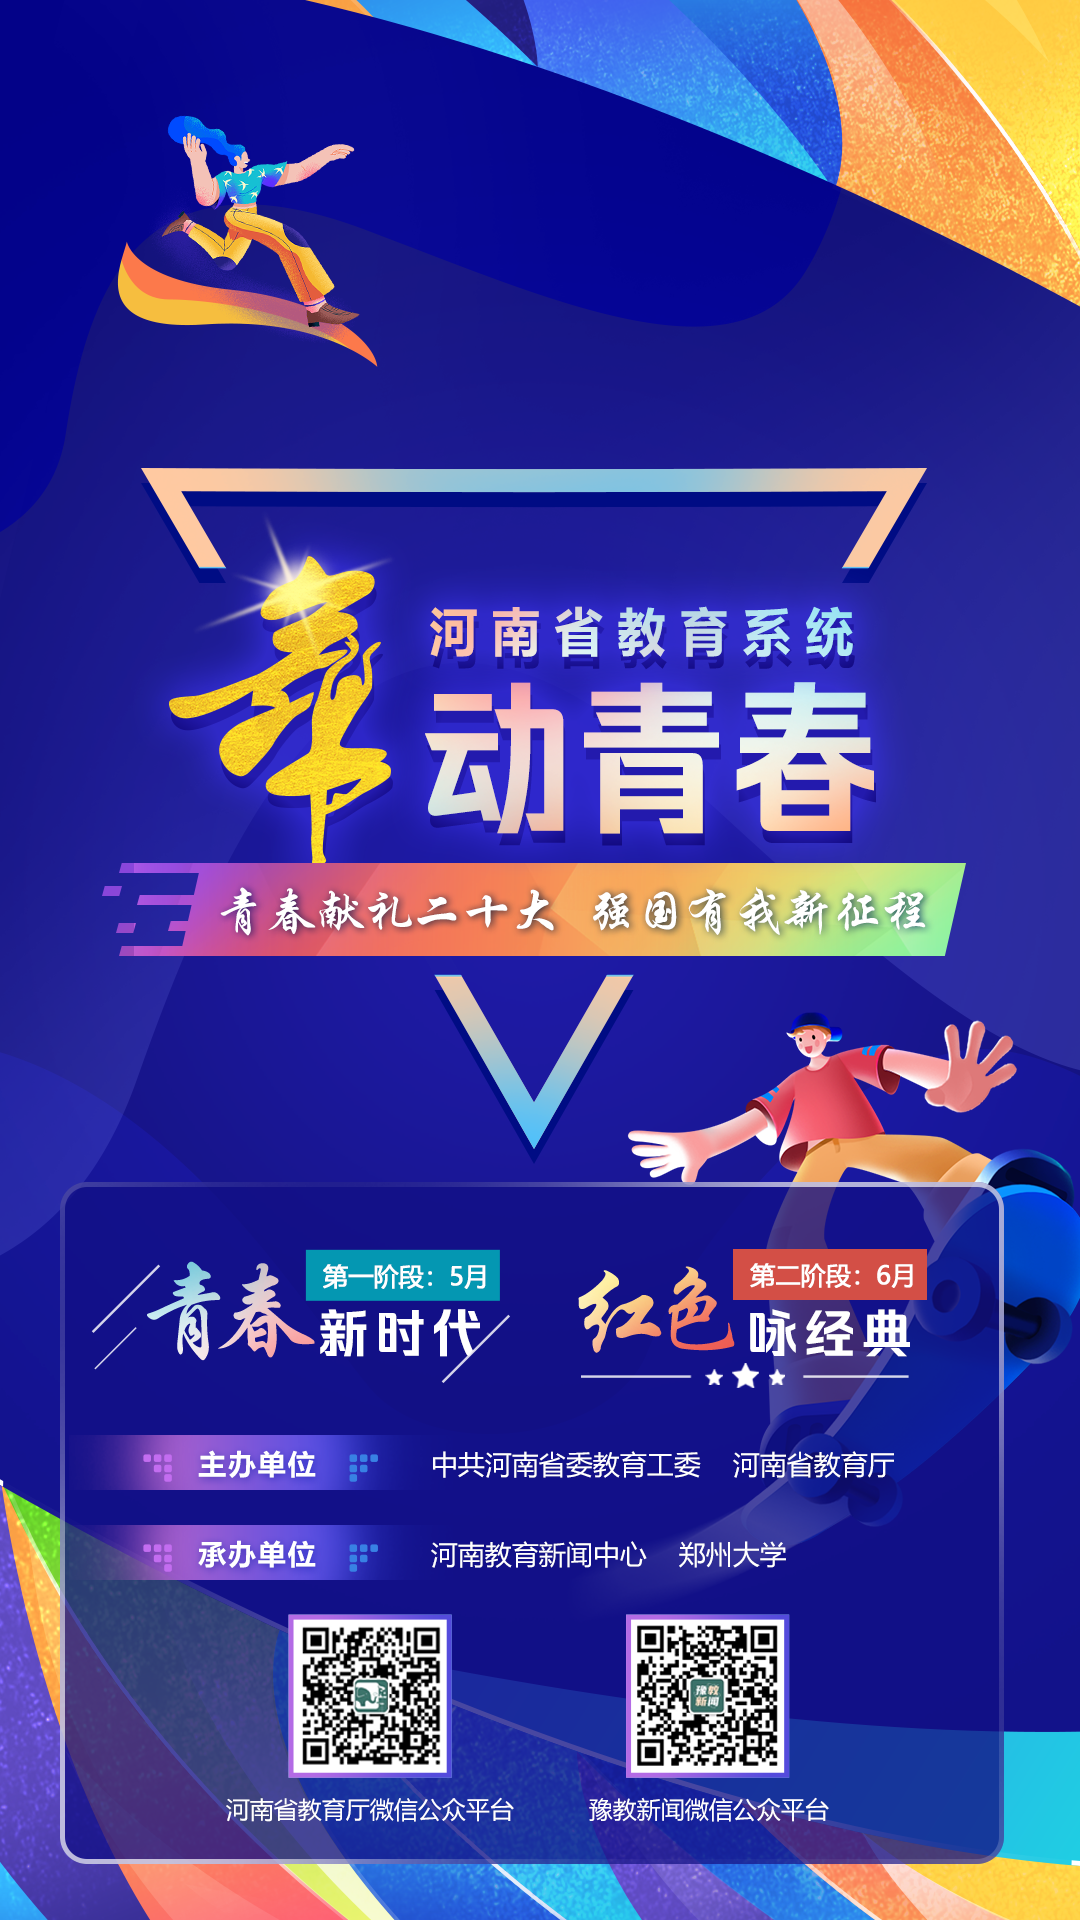 河南省教育系统“舞动青春”视频接力活动启动